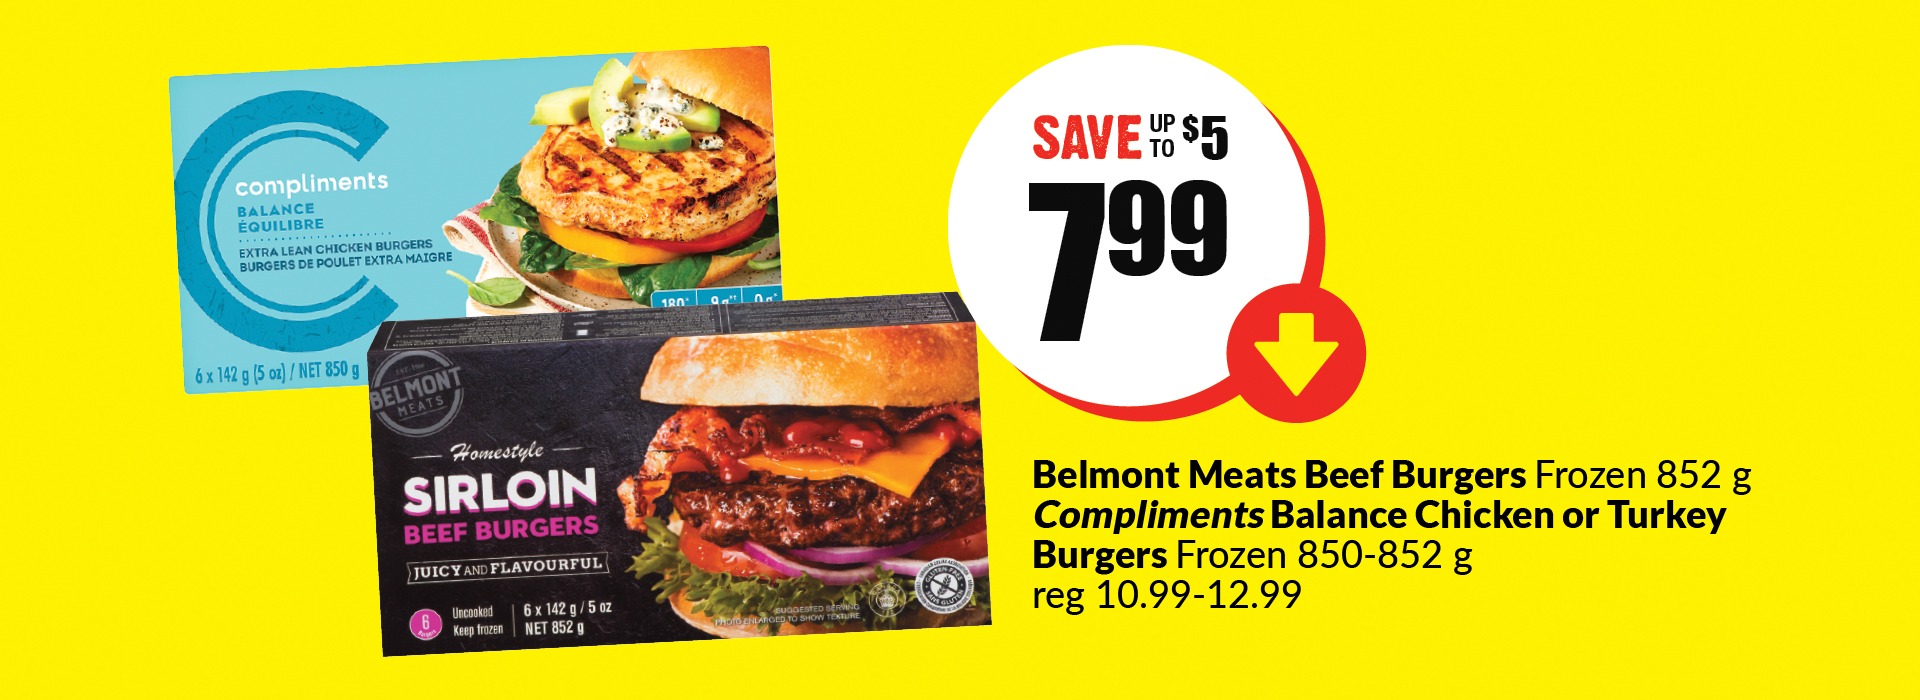 Belmont meats beef burgers